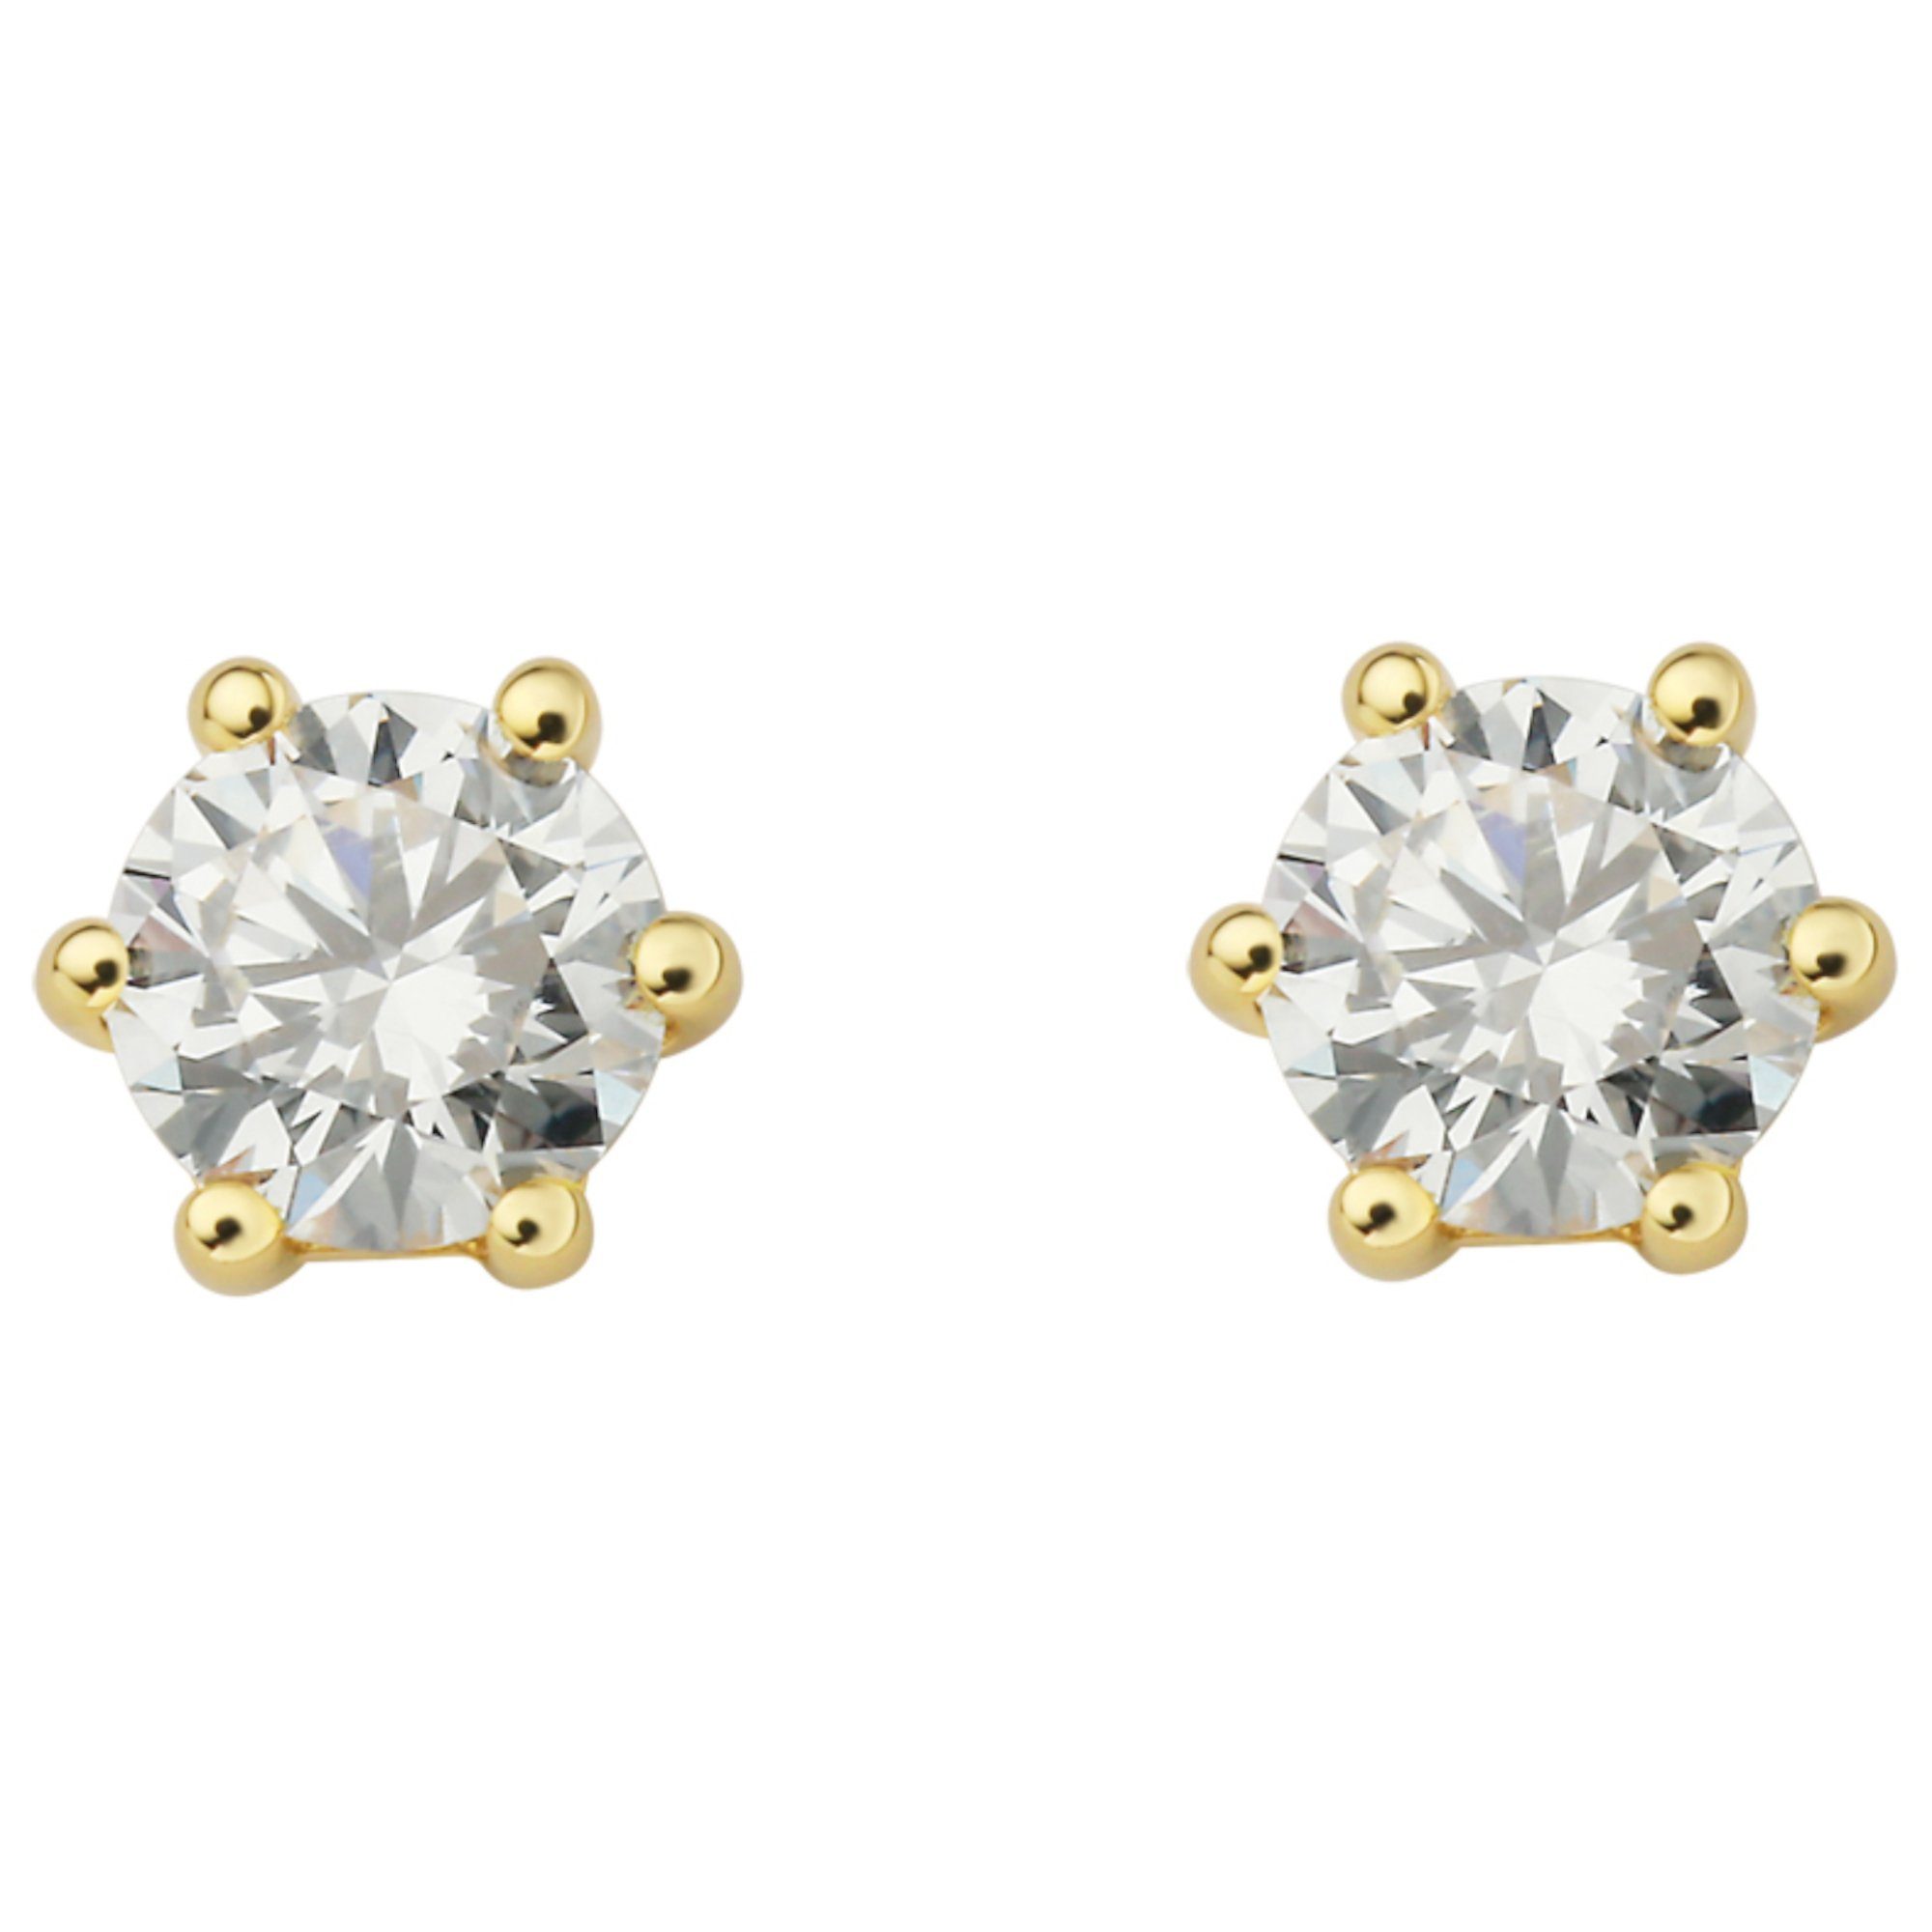 ONE ELEMENT Paar Ohrstecker 0.4 ct Diamant Brillant Ohrringe Ohrstecker aus 750 Gelbgold, Damen Gold Schmuck